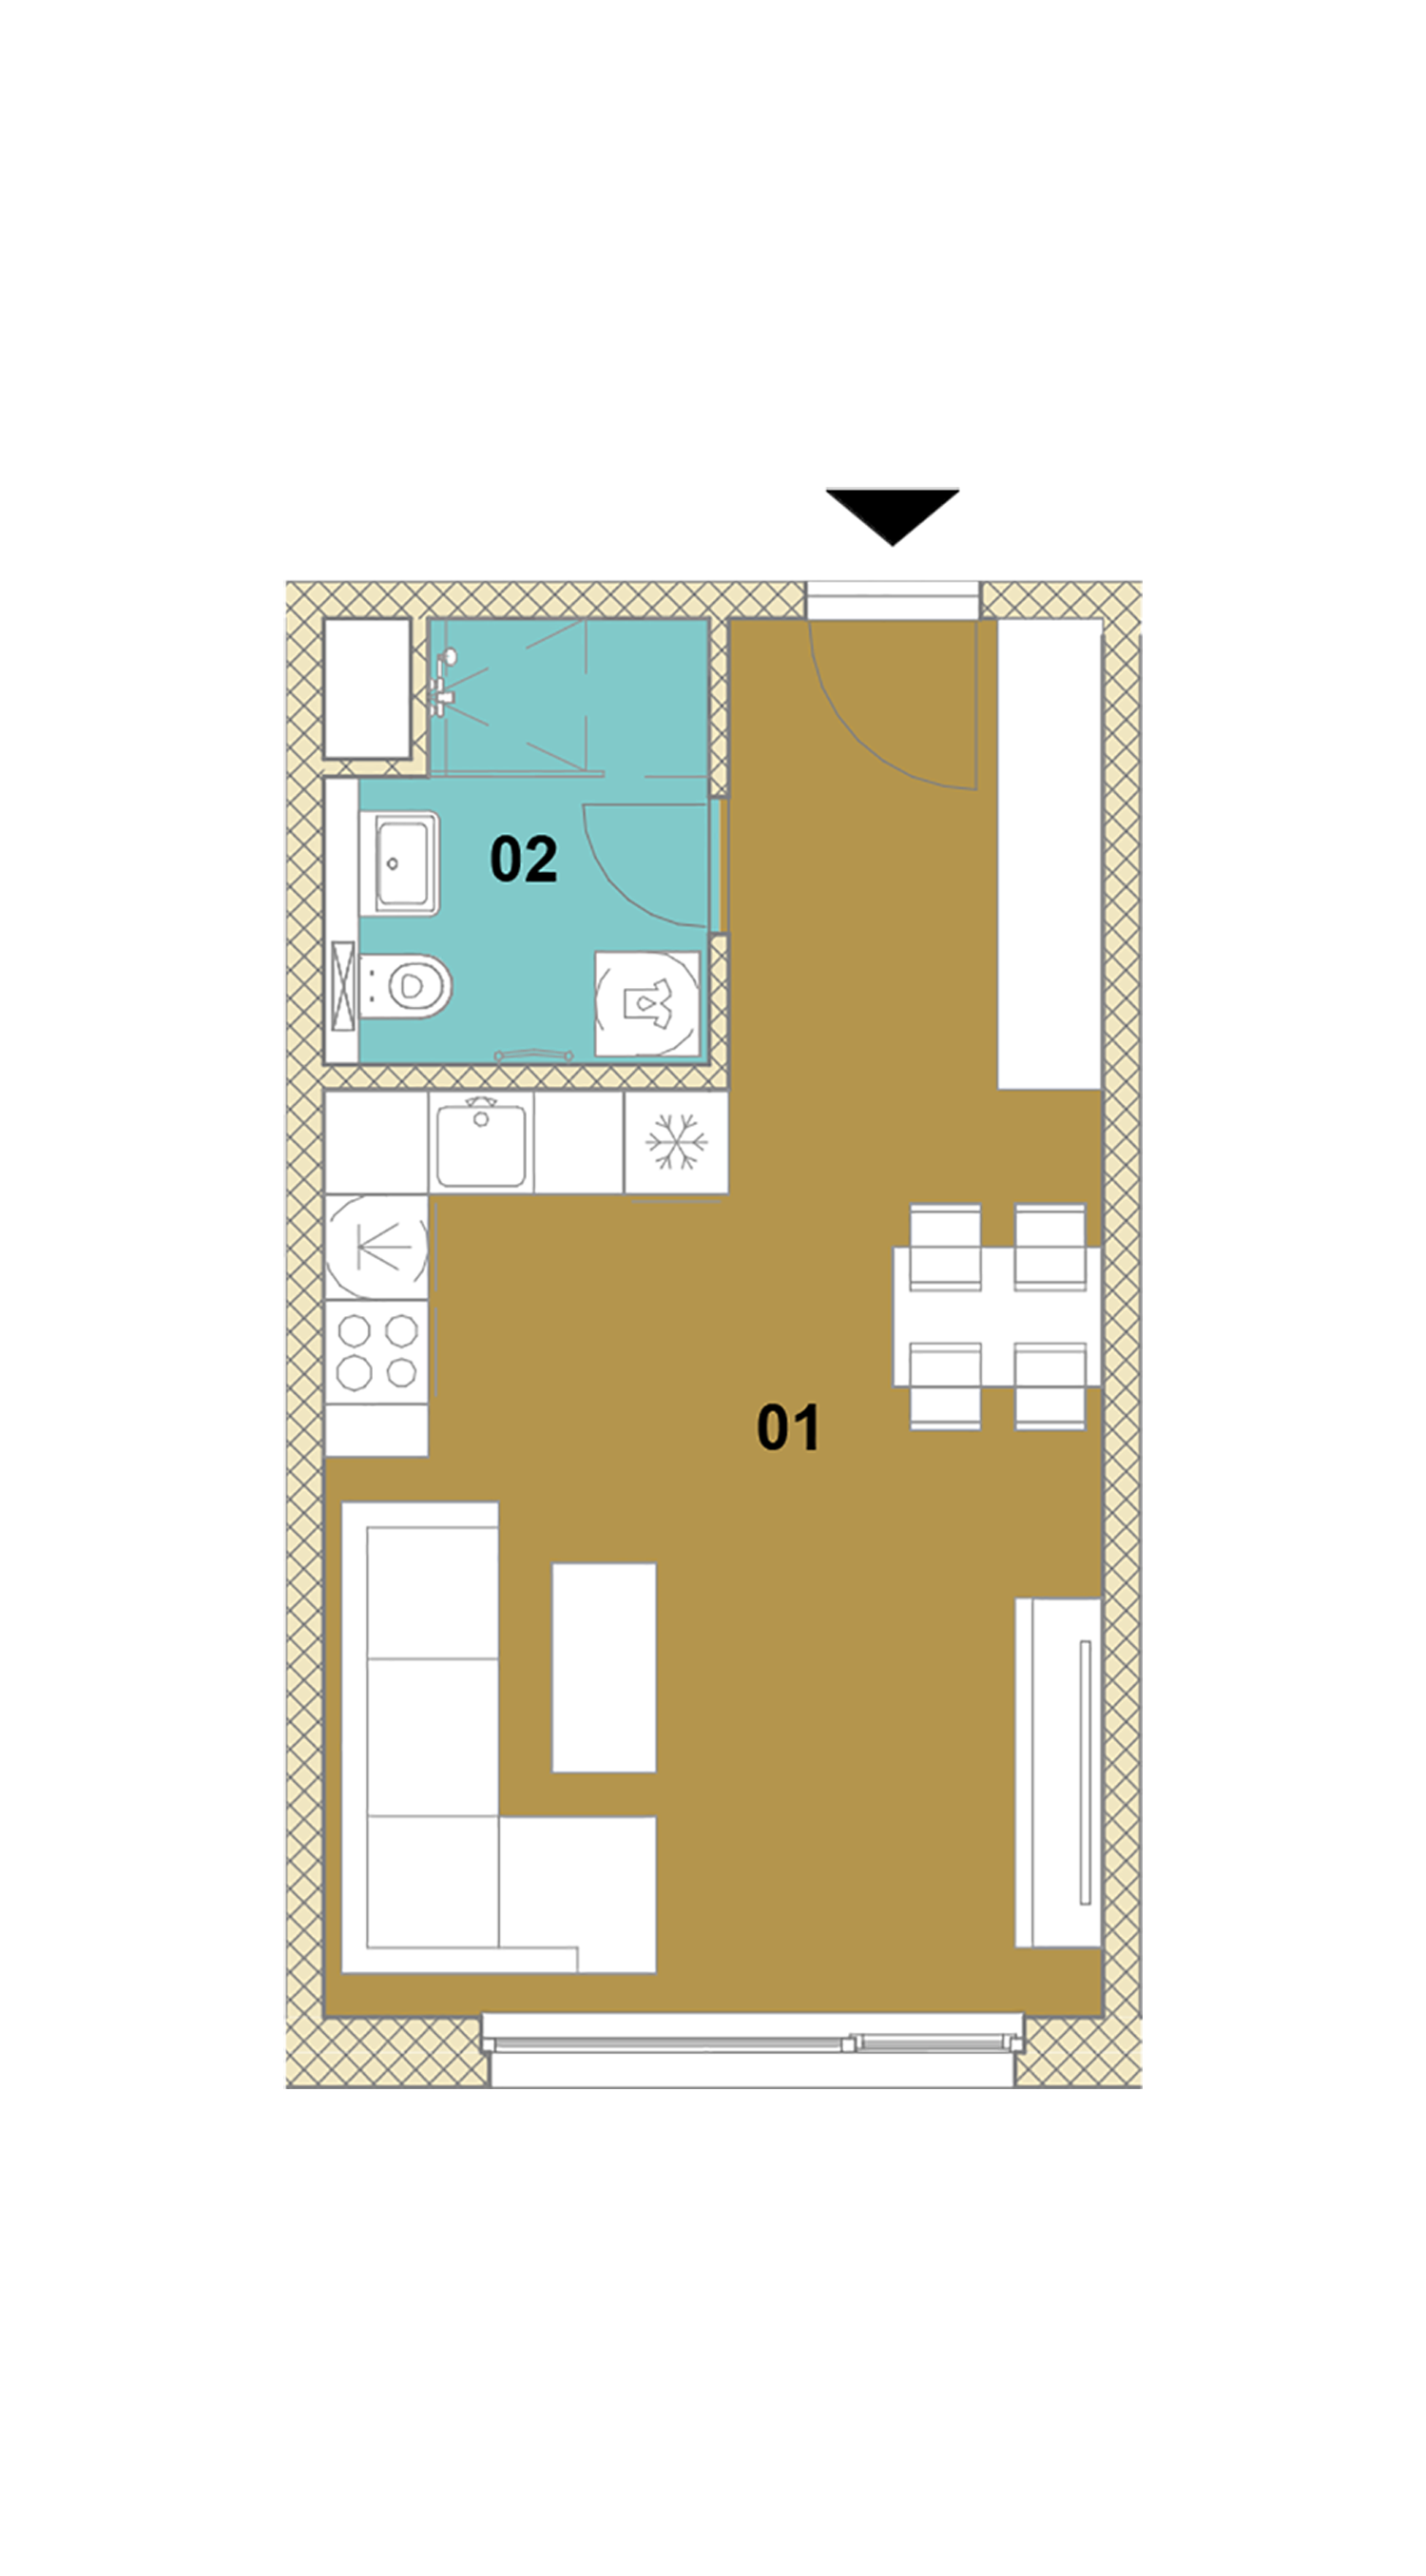 Jednoizbový byt E2-403